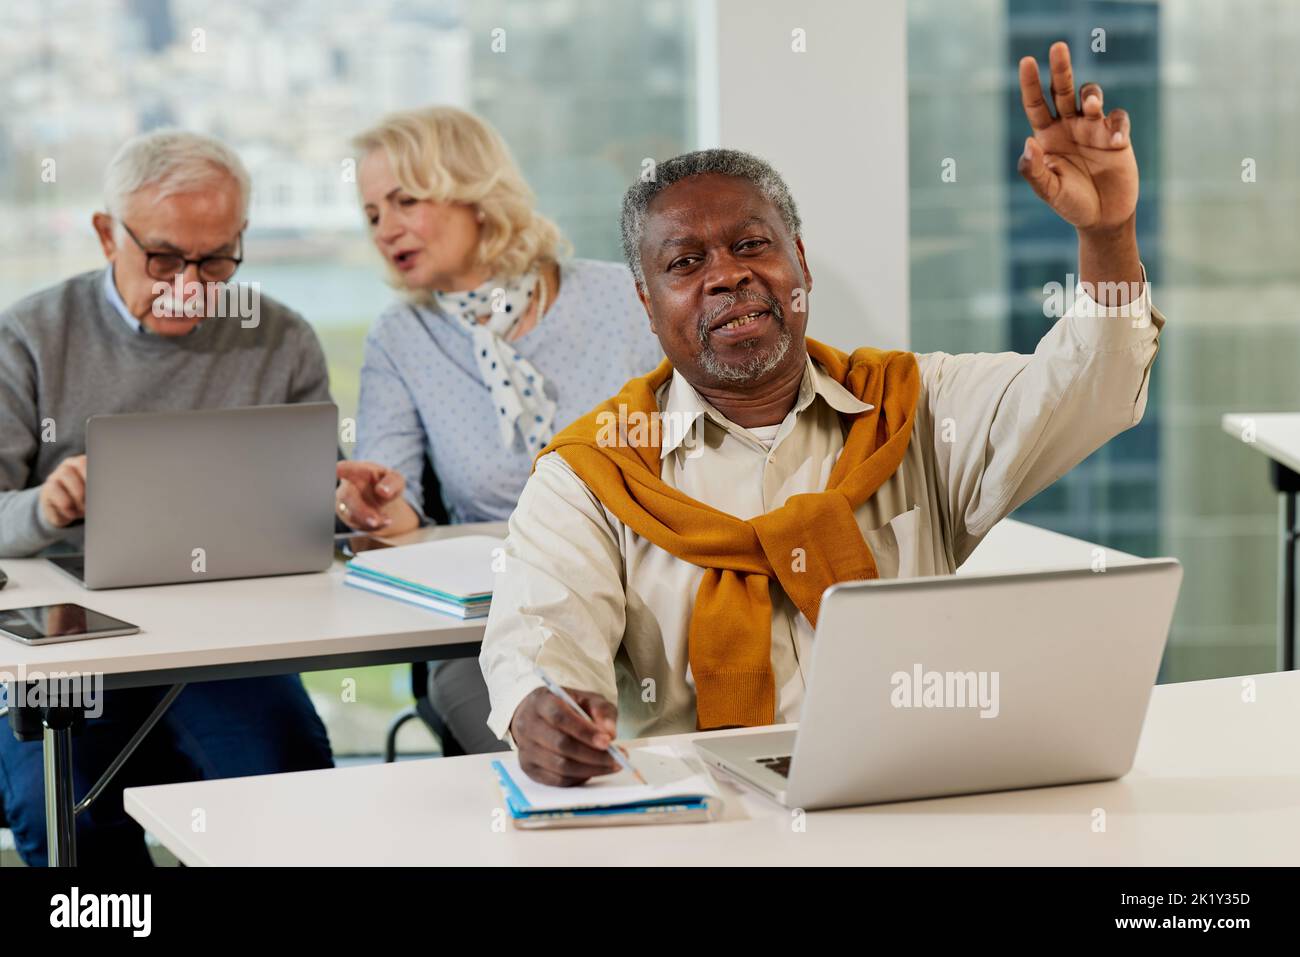 Senioren sitzen in einem Klassenzimmer und reden über das Projekt auf dem Laptop, während ein multikultureller Senior Student im Vordergrund Fragen stellt. Stockfoto